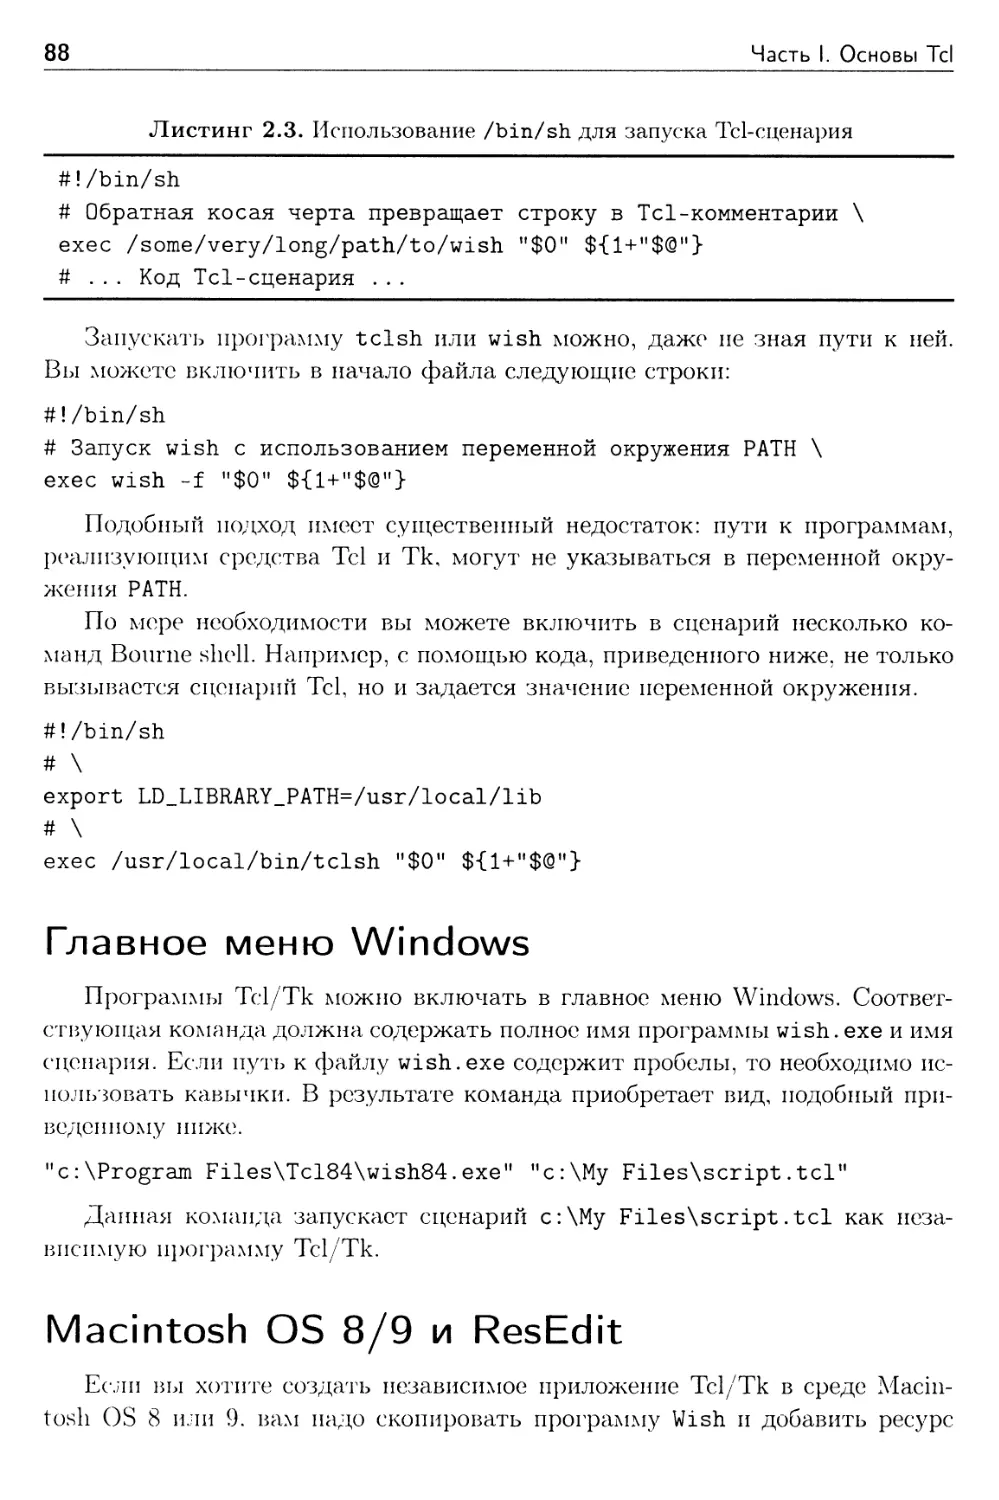 Главное меню Windows
Macintosh OS 8/9 и ResEdit